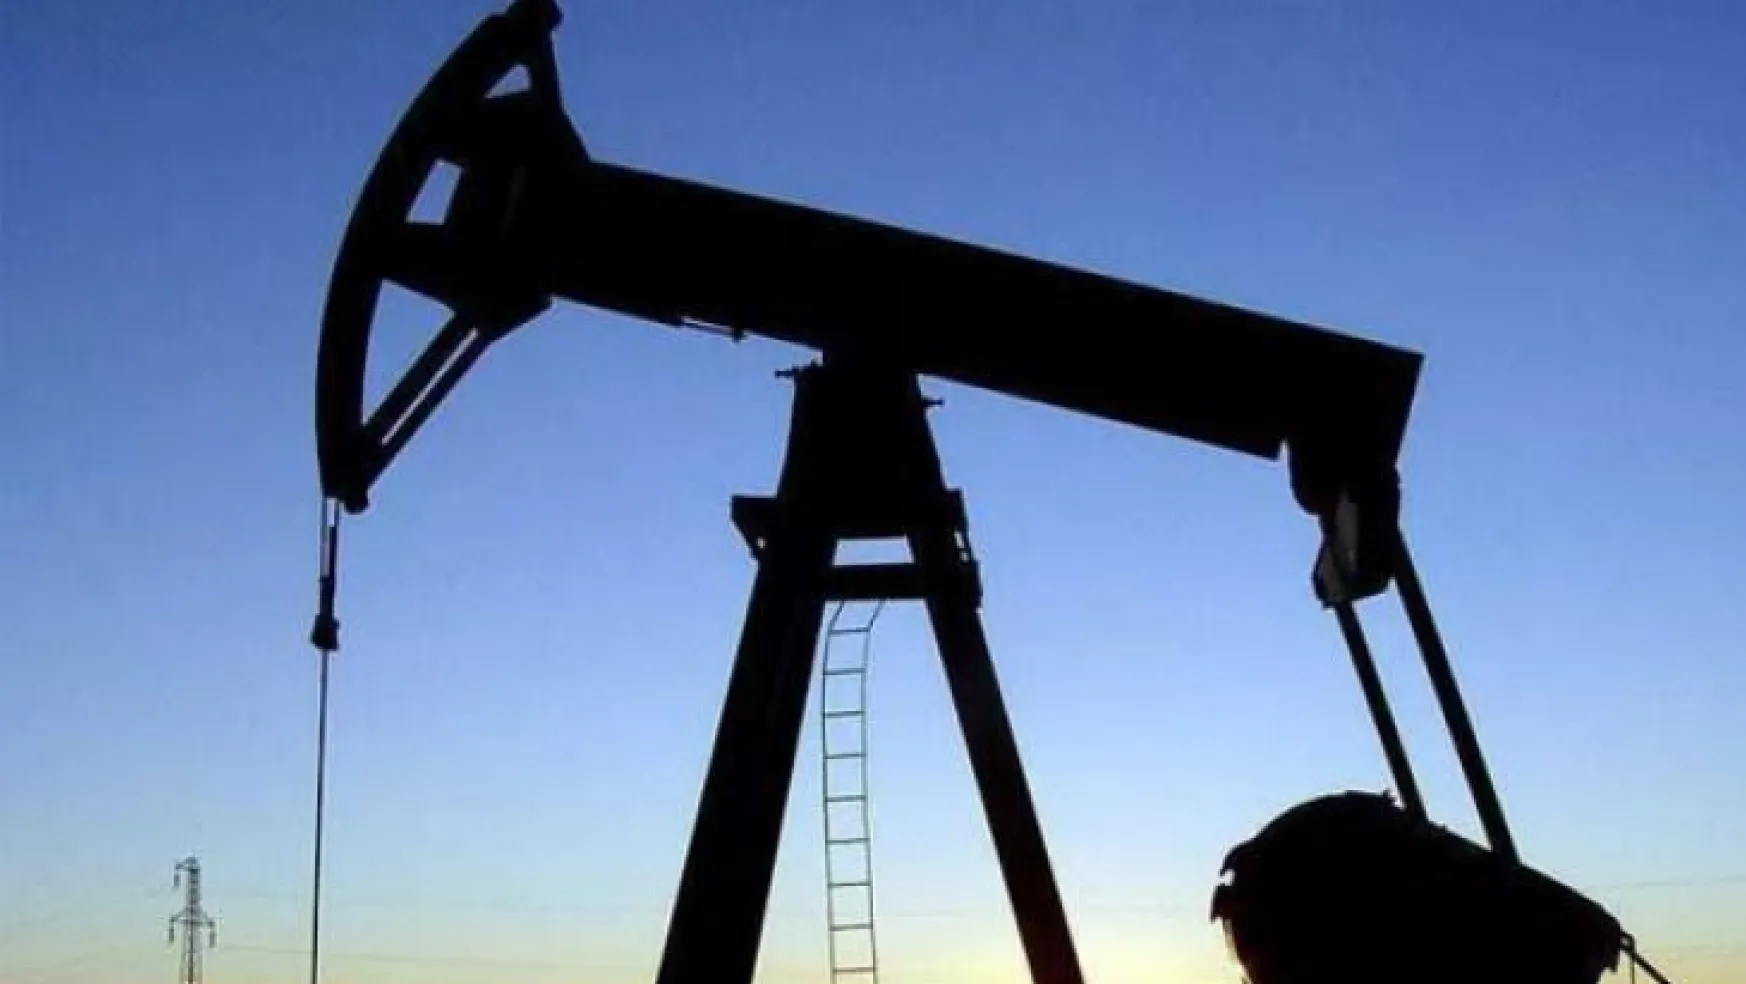 Brent petrolün varil fiyatı 102,22 dolar